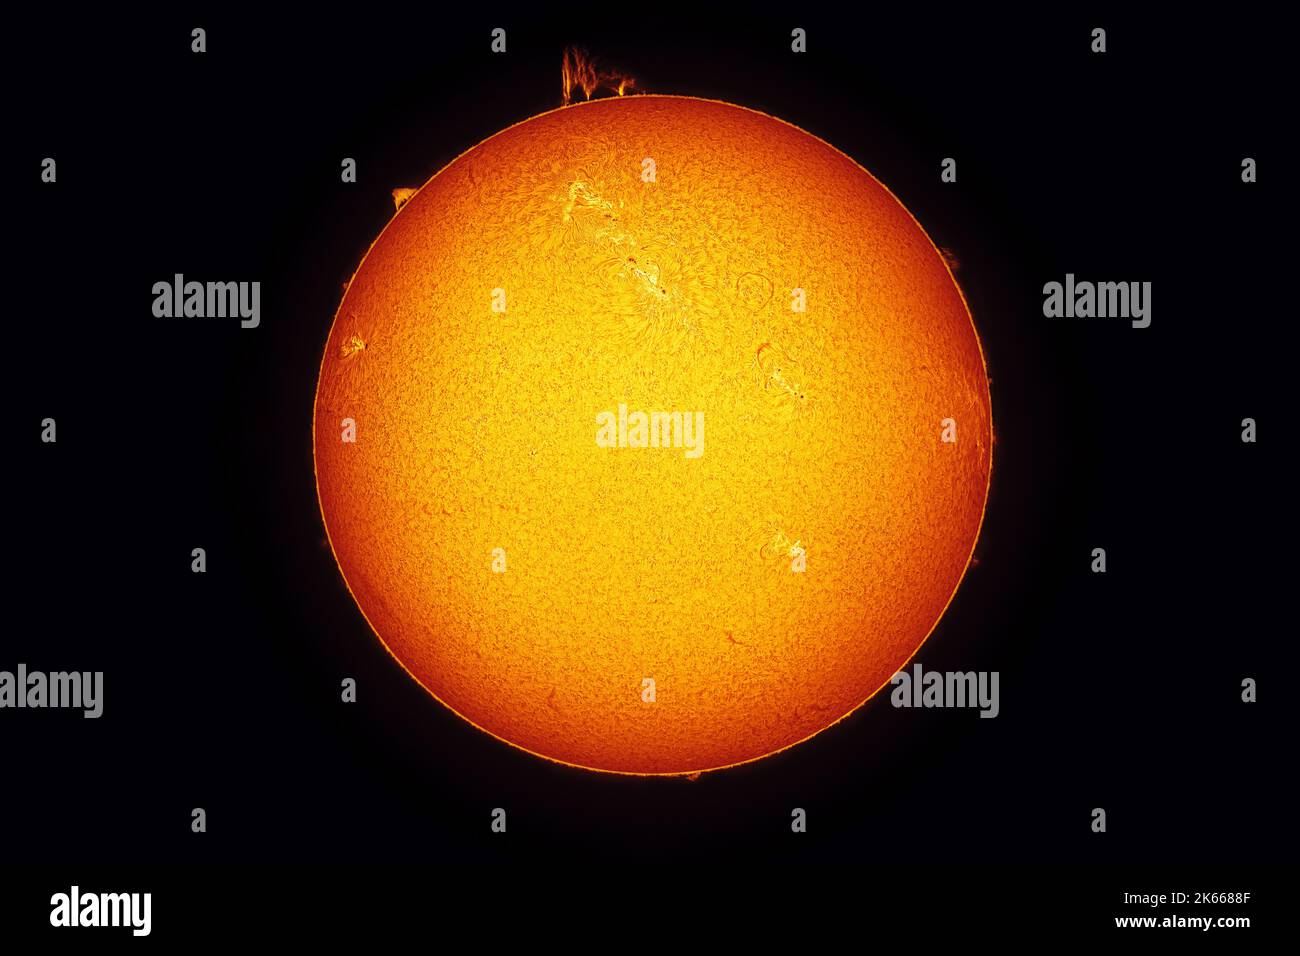 Sole luminoso contro cielo stellato scuro in sistema solare, con prominenze visibili, fibre, spicules, plage, macchie e cromosfera. Foto amatoriale in H-al Foto Stock